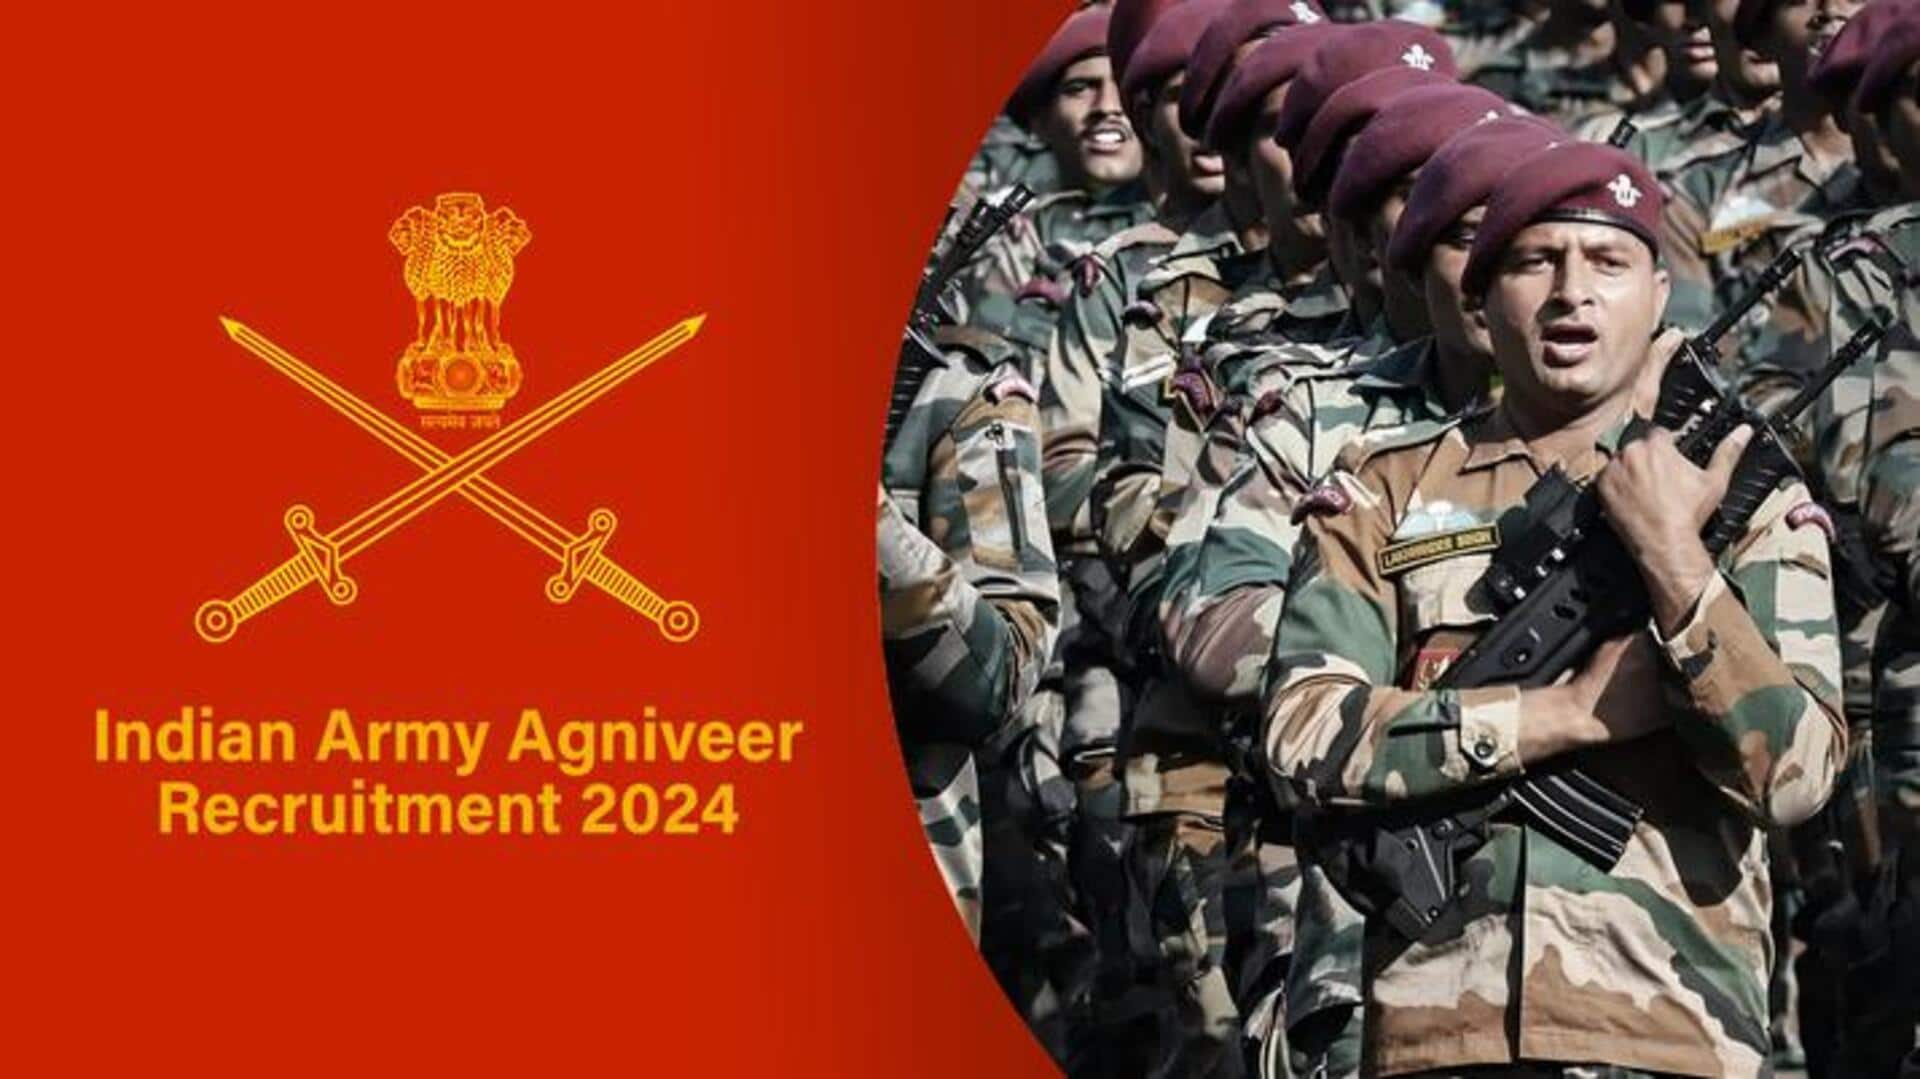 भारतीय सेना में अग्निवीर भर्ती के लिए शुरू हुई आवेदन प्रक्रिया, जानिए शैक्षिक योग्यता मानदंड